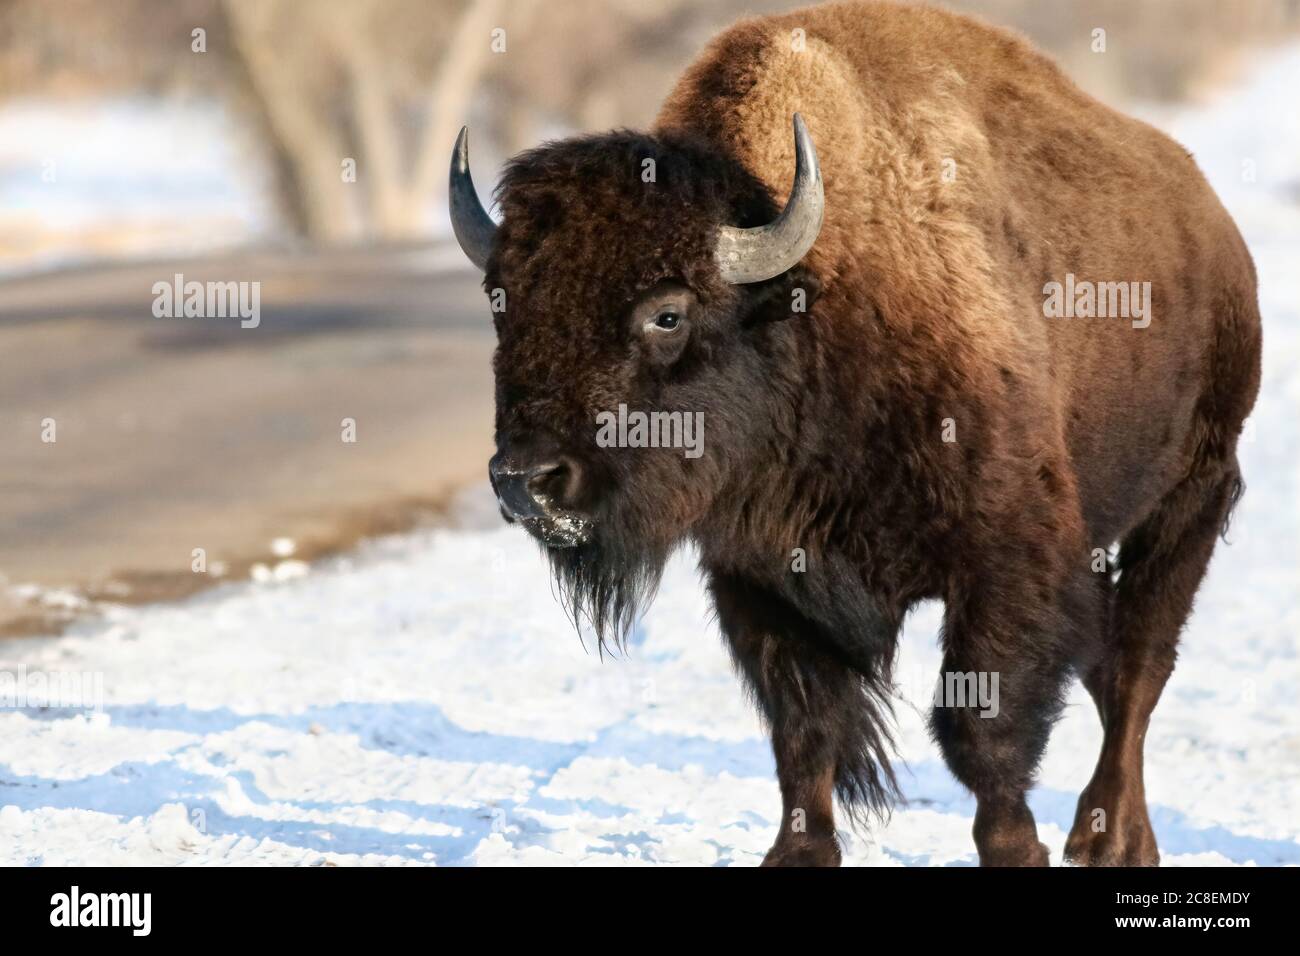 Un bisonte americano con una nieve cubierta de nieve camina junto a una carretera en invierno en el Rocky Mountain Arsenal Wildlife Refuge. Foto de stock